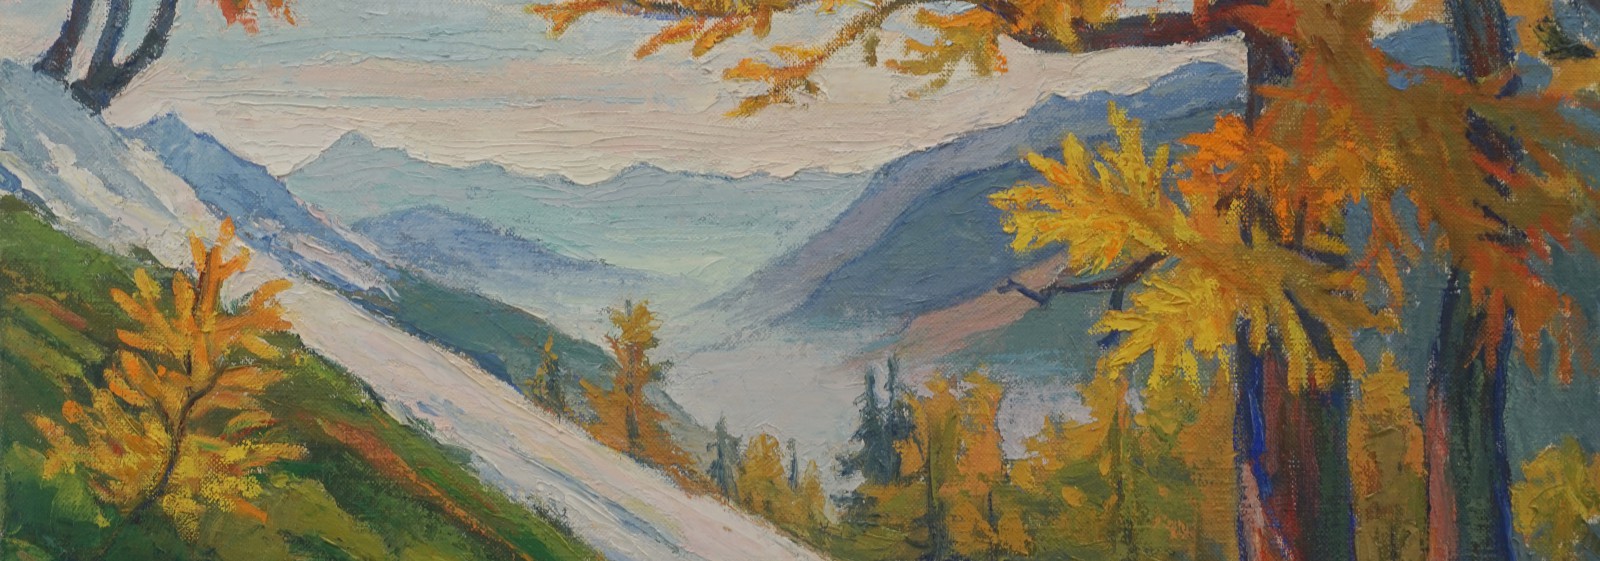 Obraz przedstawiający dolinę jesienią. Na obrazie widać góry i rosnące na zboczach pojedyncze drzewa. 